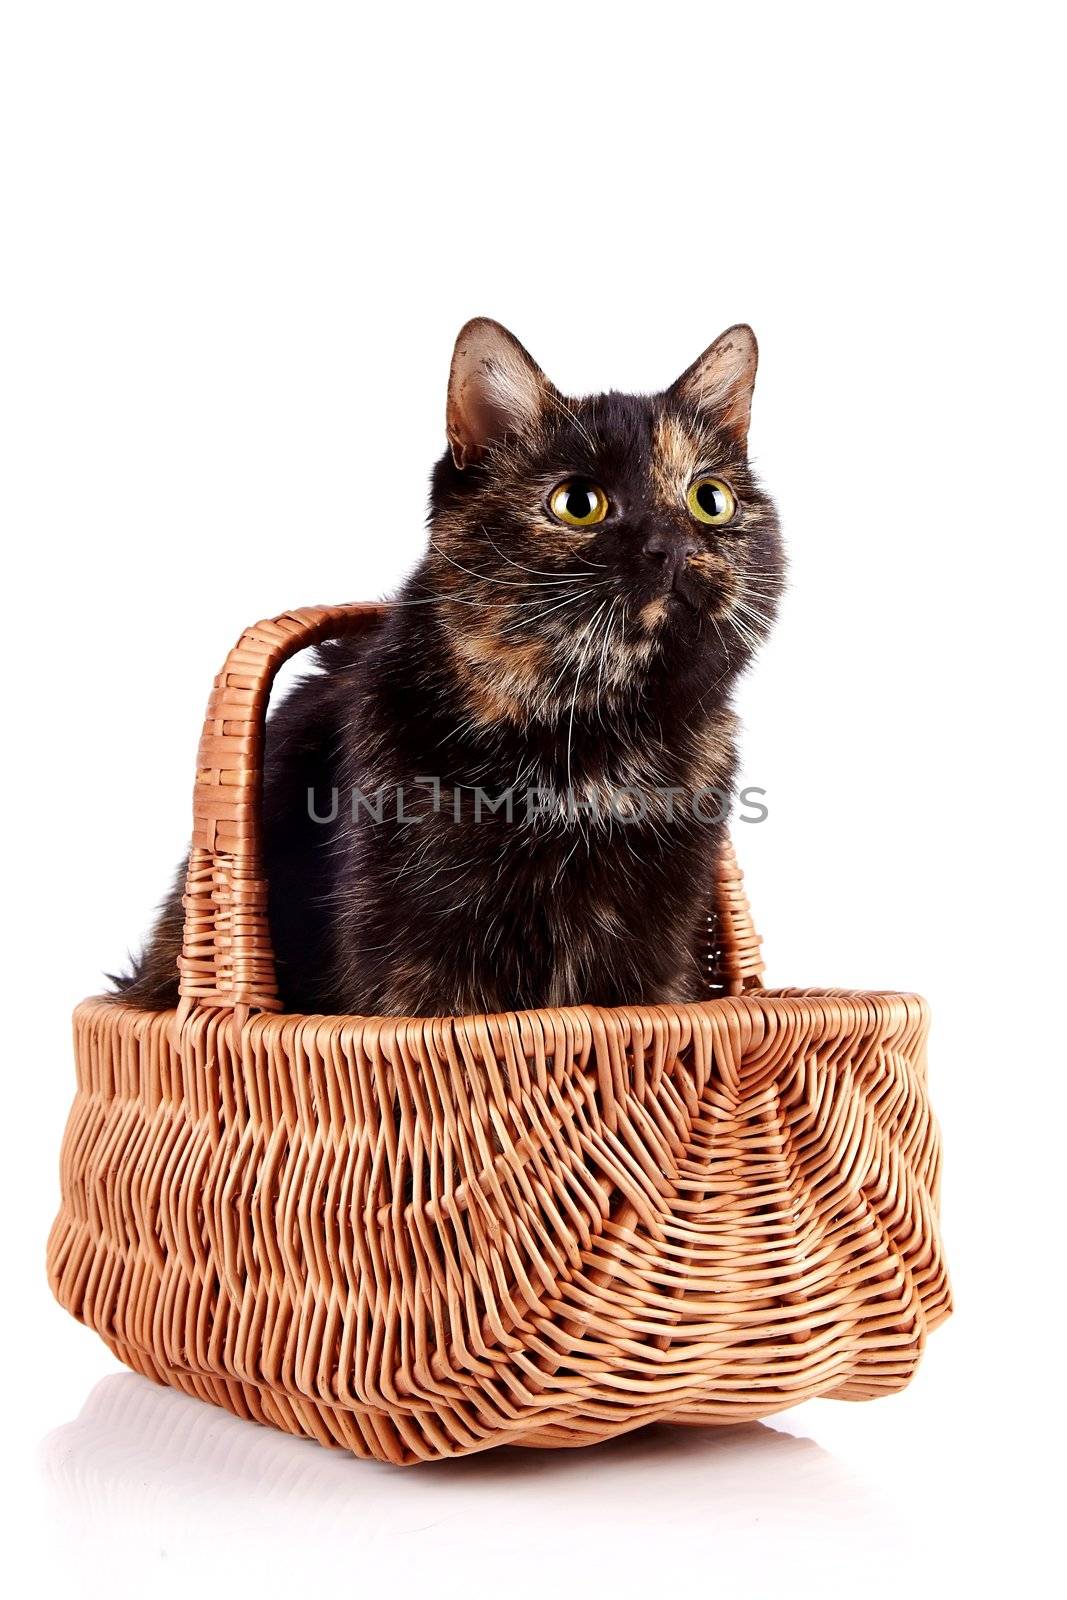 Cat in a wattled basket by Azaliya